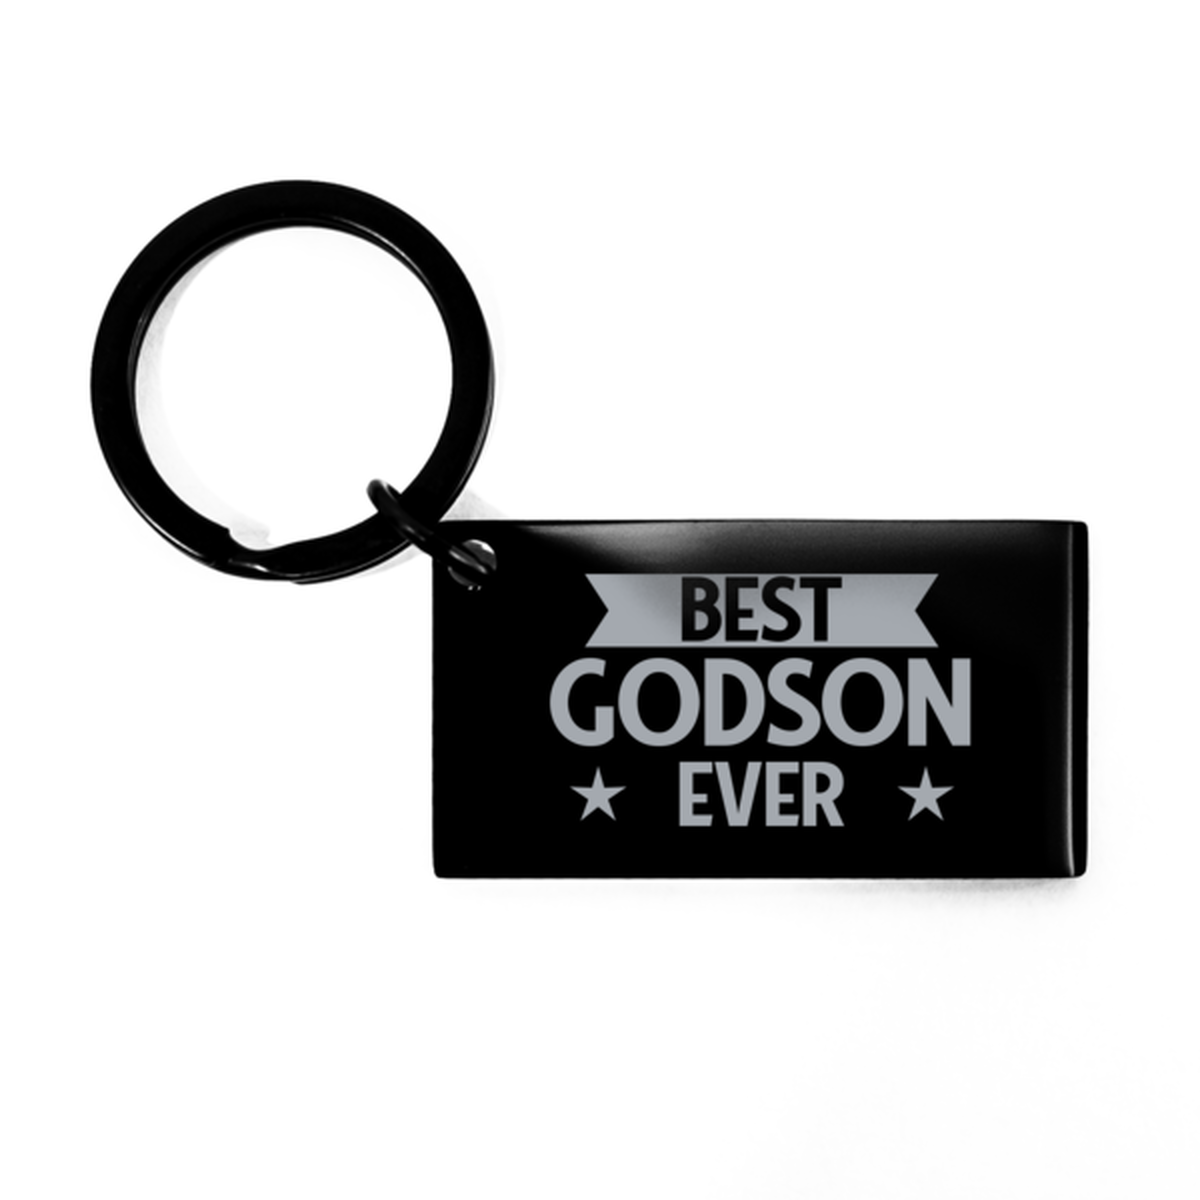 Best Godson Ever Godson Gifts, Funny Black Keychain For Godson, Birthday Engraved Keyring Presents For Men